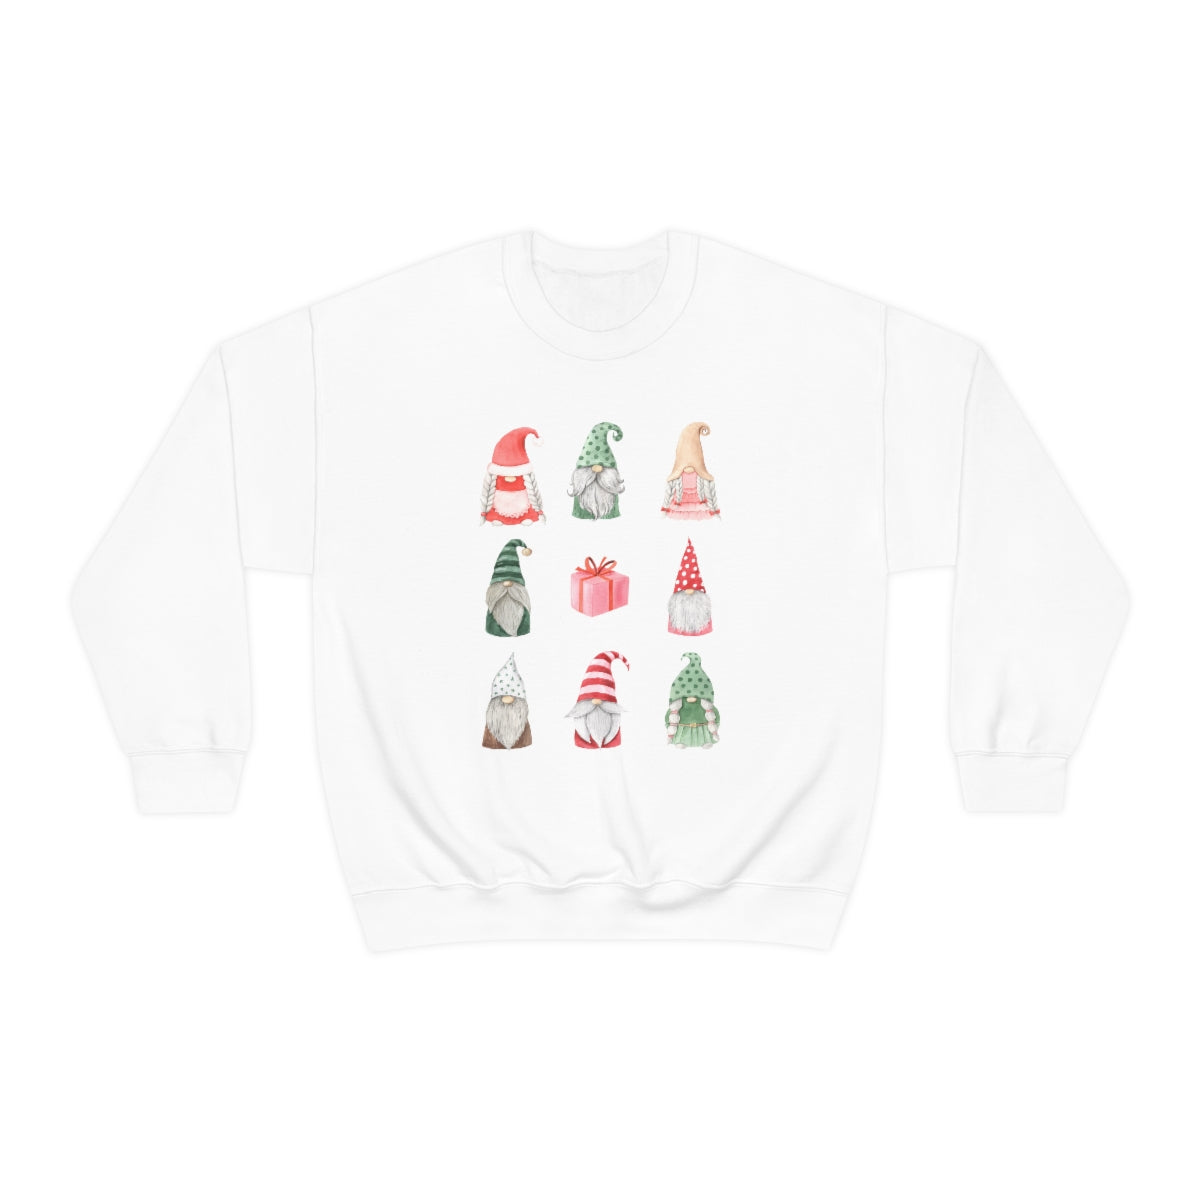 Gnomes Christmas Sweatshirt